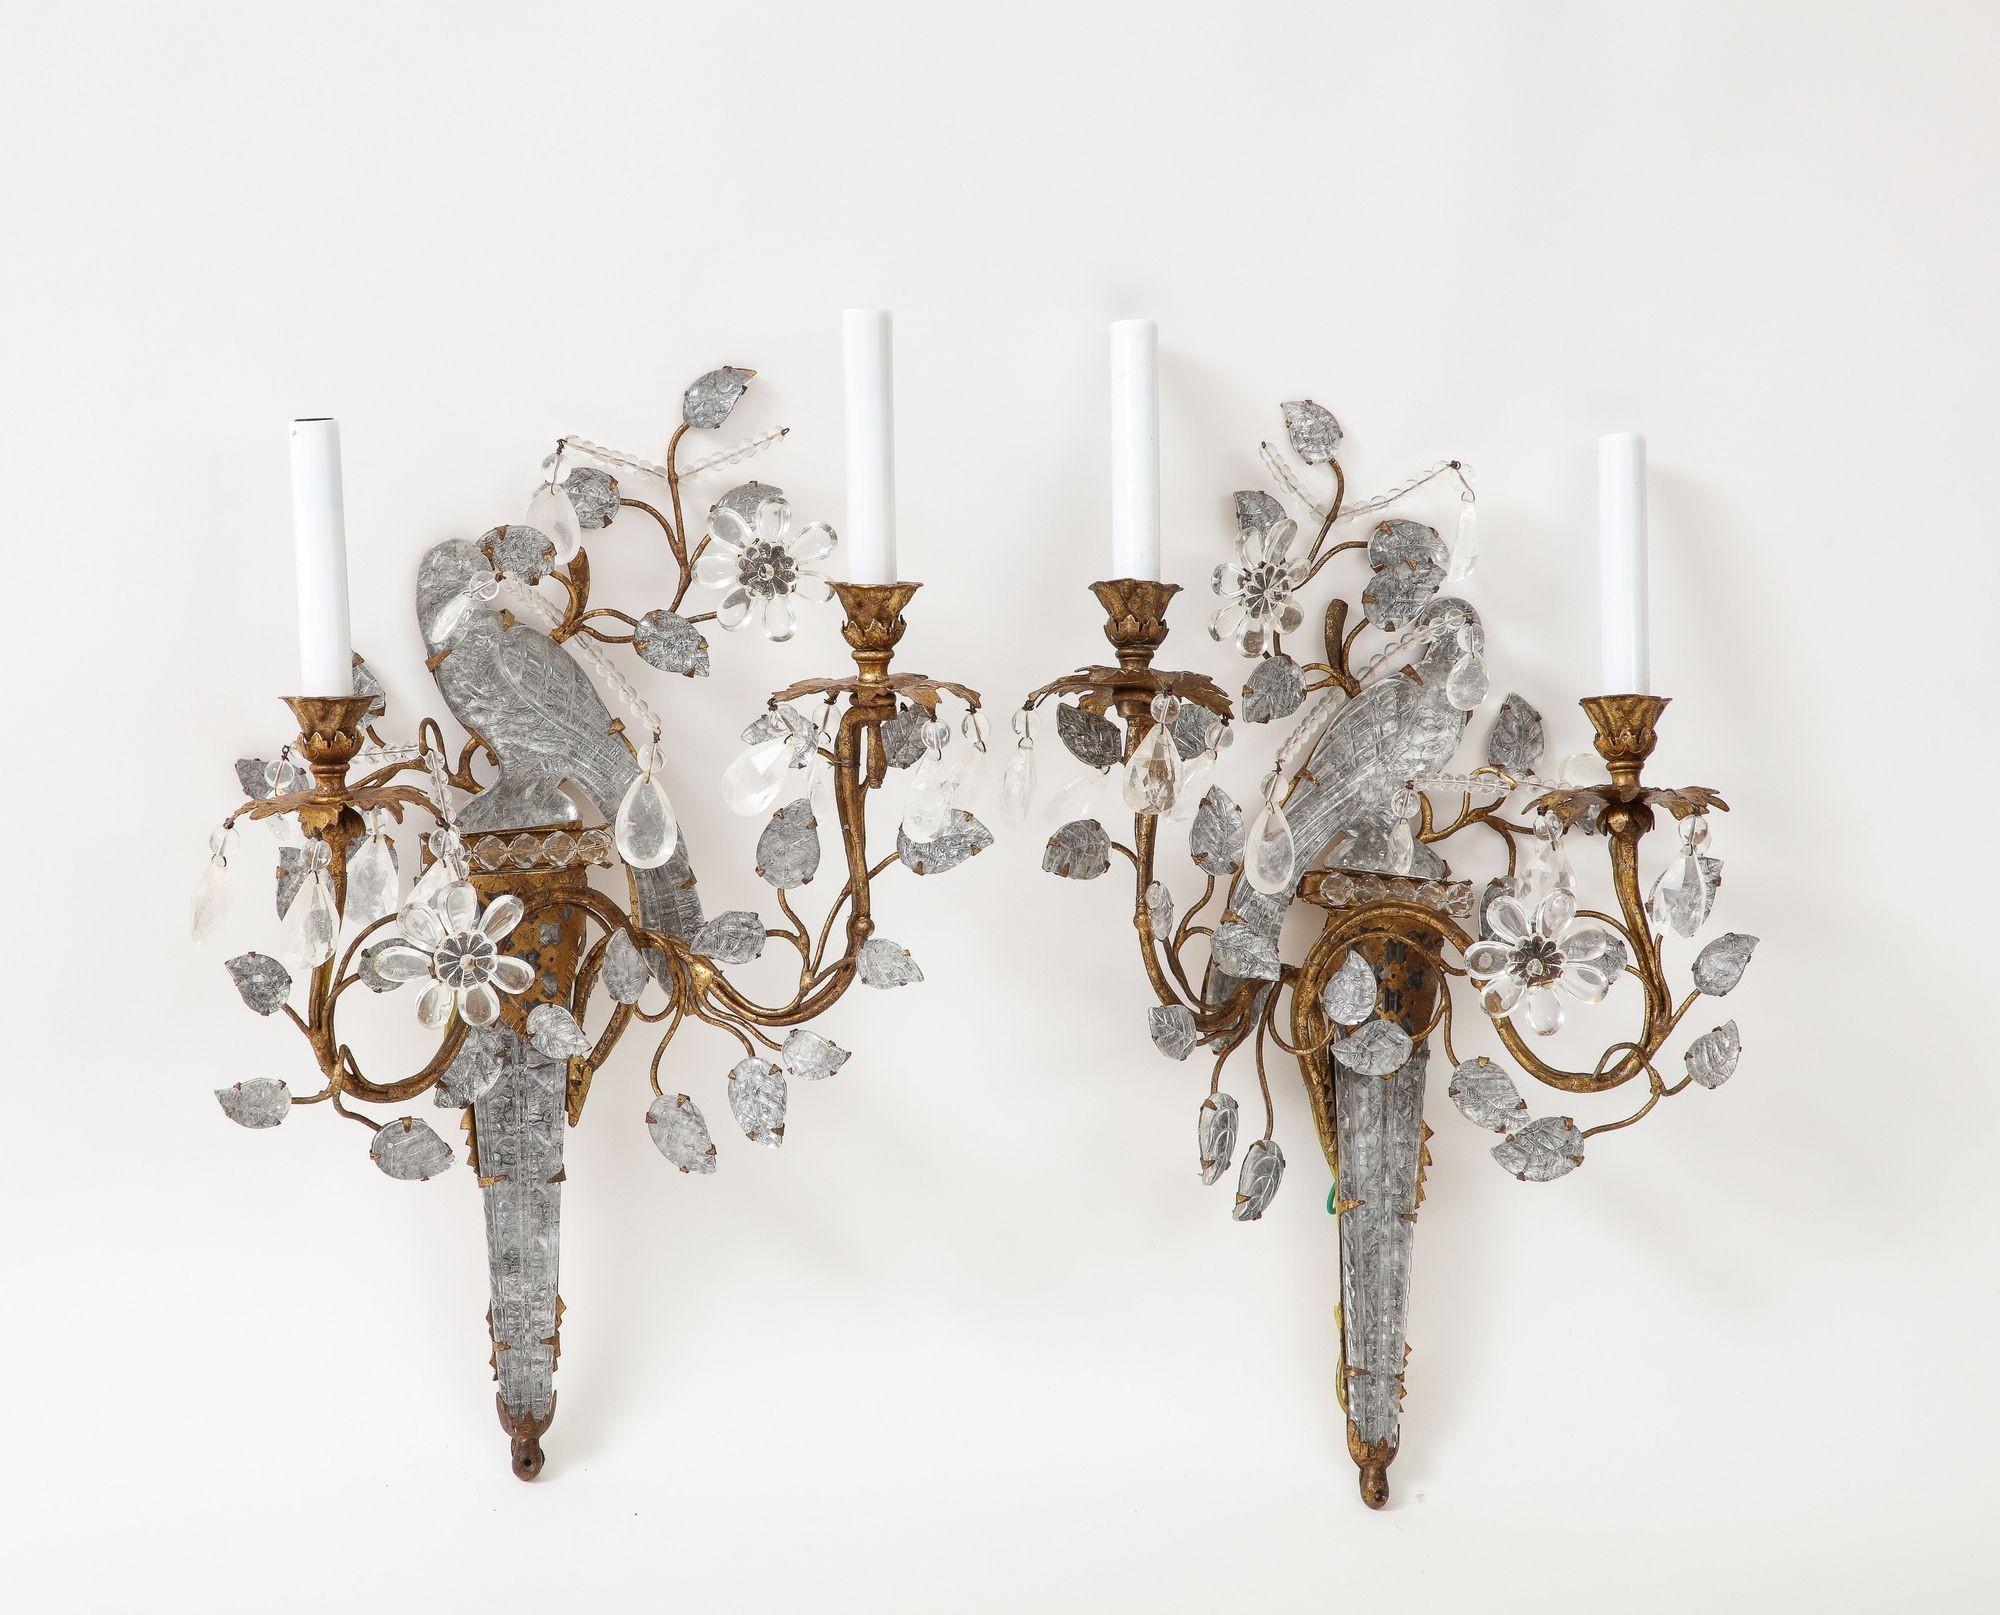 Quatre grandes bagues en cristal de roche vintage appliques en cristal de roche oiseaux avec deux bougies de bras soutenus sur des vignes fleuries.